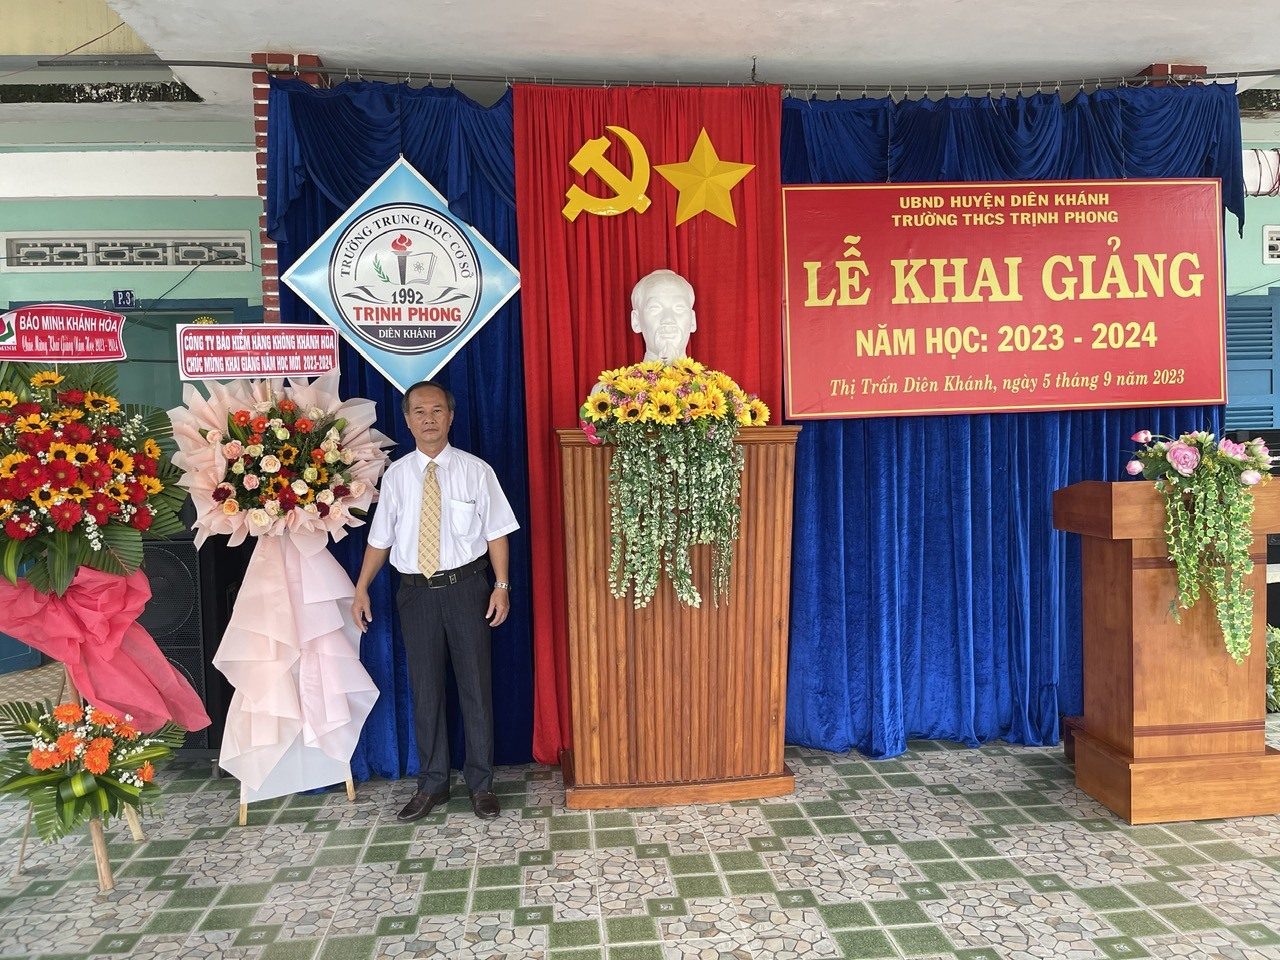 Thầy Nguyễn Văn Lực, Trường THCS Trịnh Phong, Khánh Hoà chụp ảnh lưu niệm trong ngày khai giảng 2.9. Ảnh: Nhân vật cung cấp